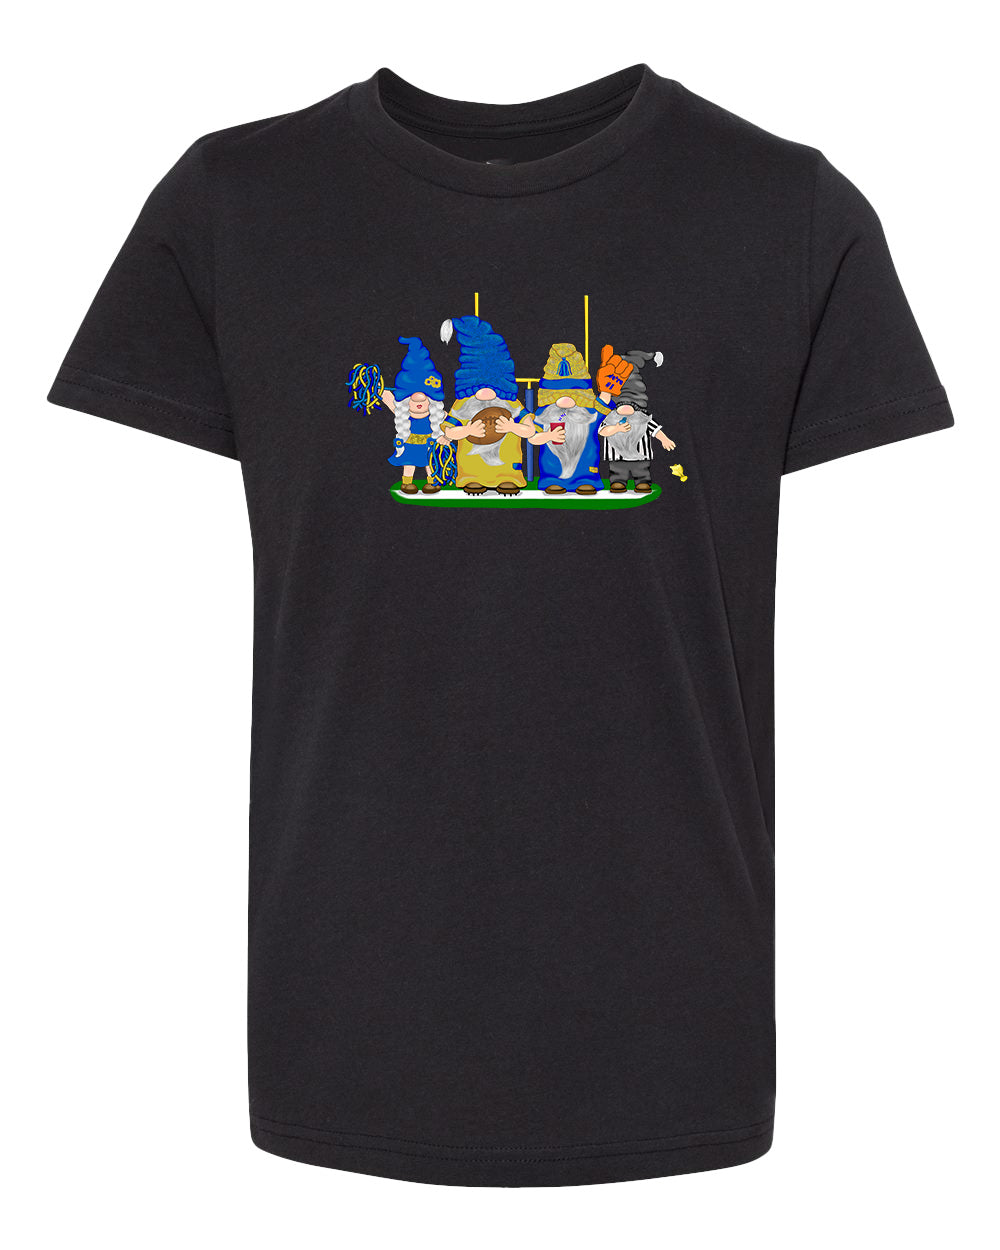 Blue & Gold Football Gnomes  (similar to LA) on Kids T-shirt